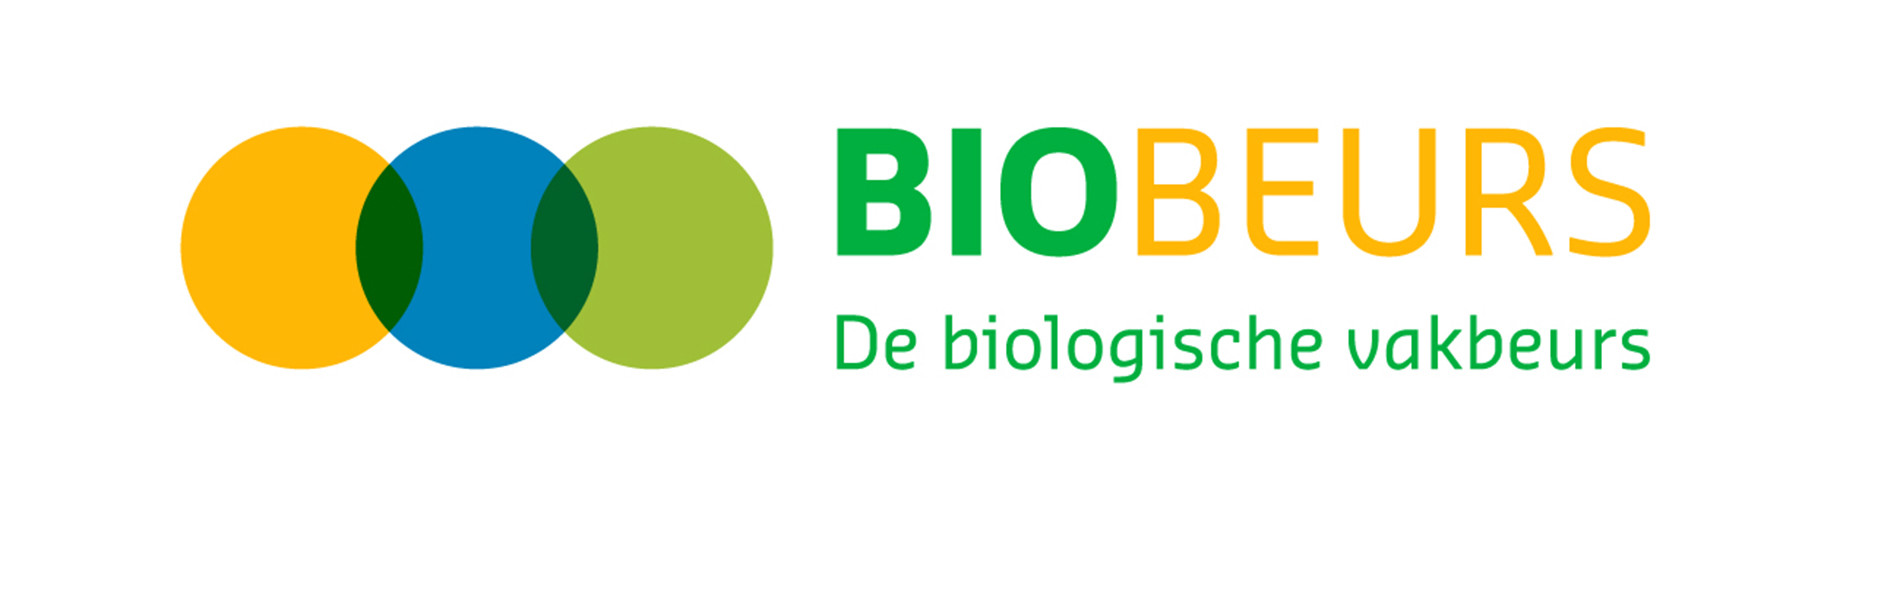 Biobeurs 2019 header